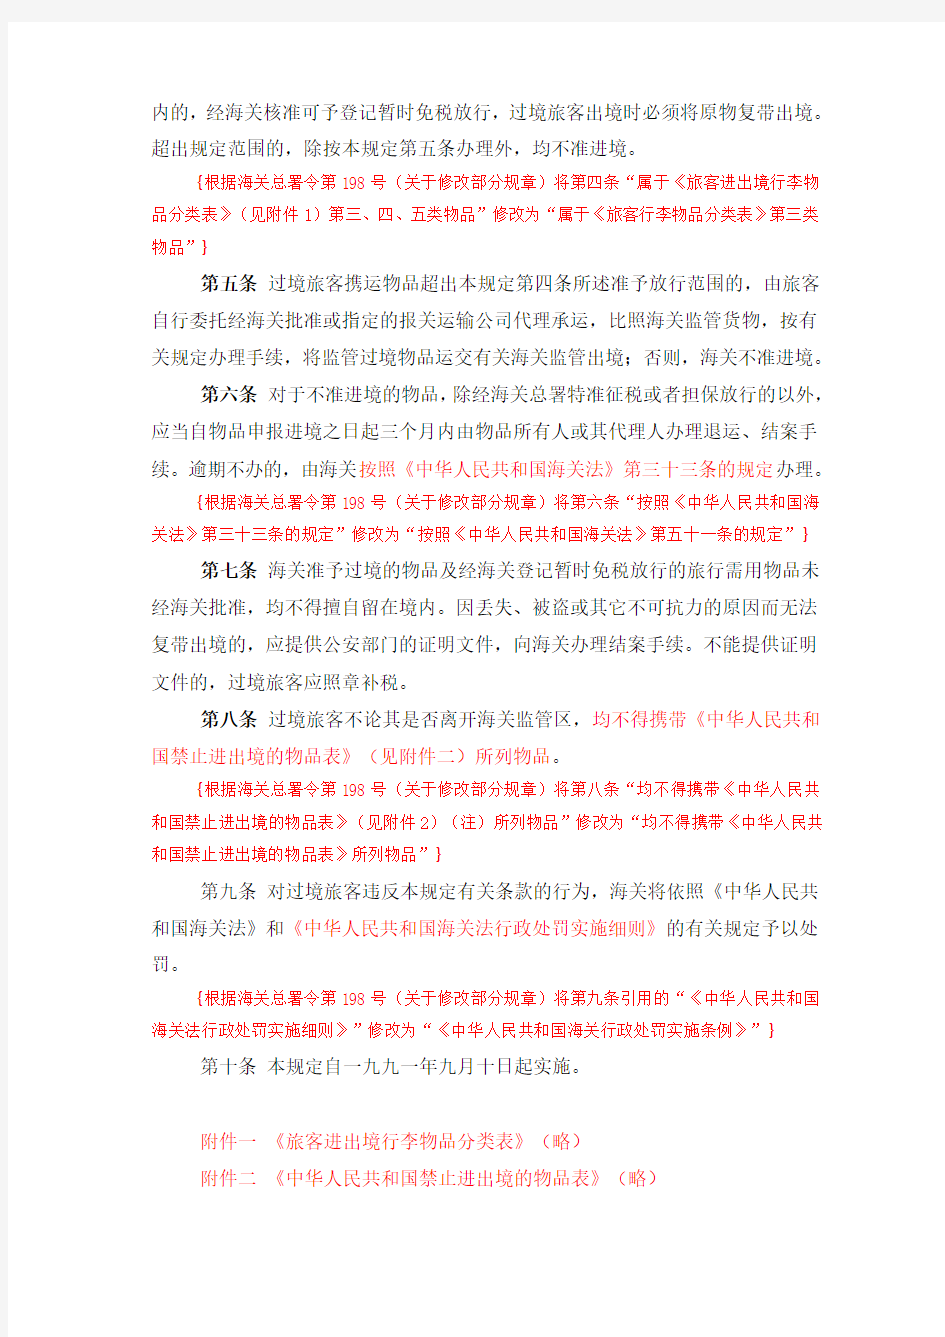 (海关总署令第025号)中华人民共和国海关关于过境旅客行李物品管理规定